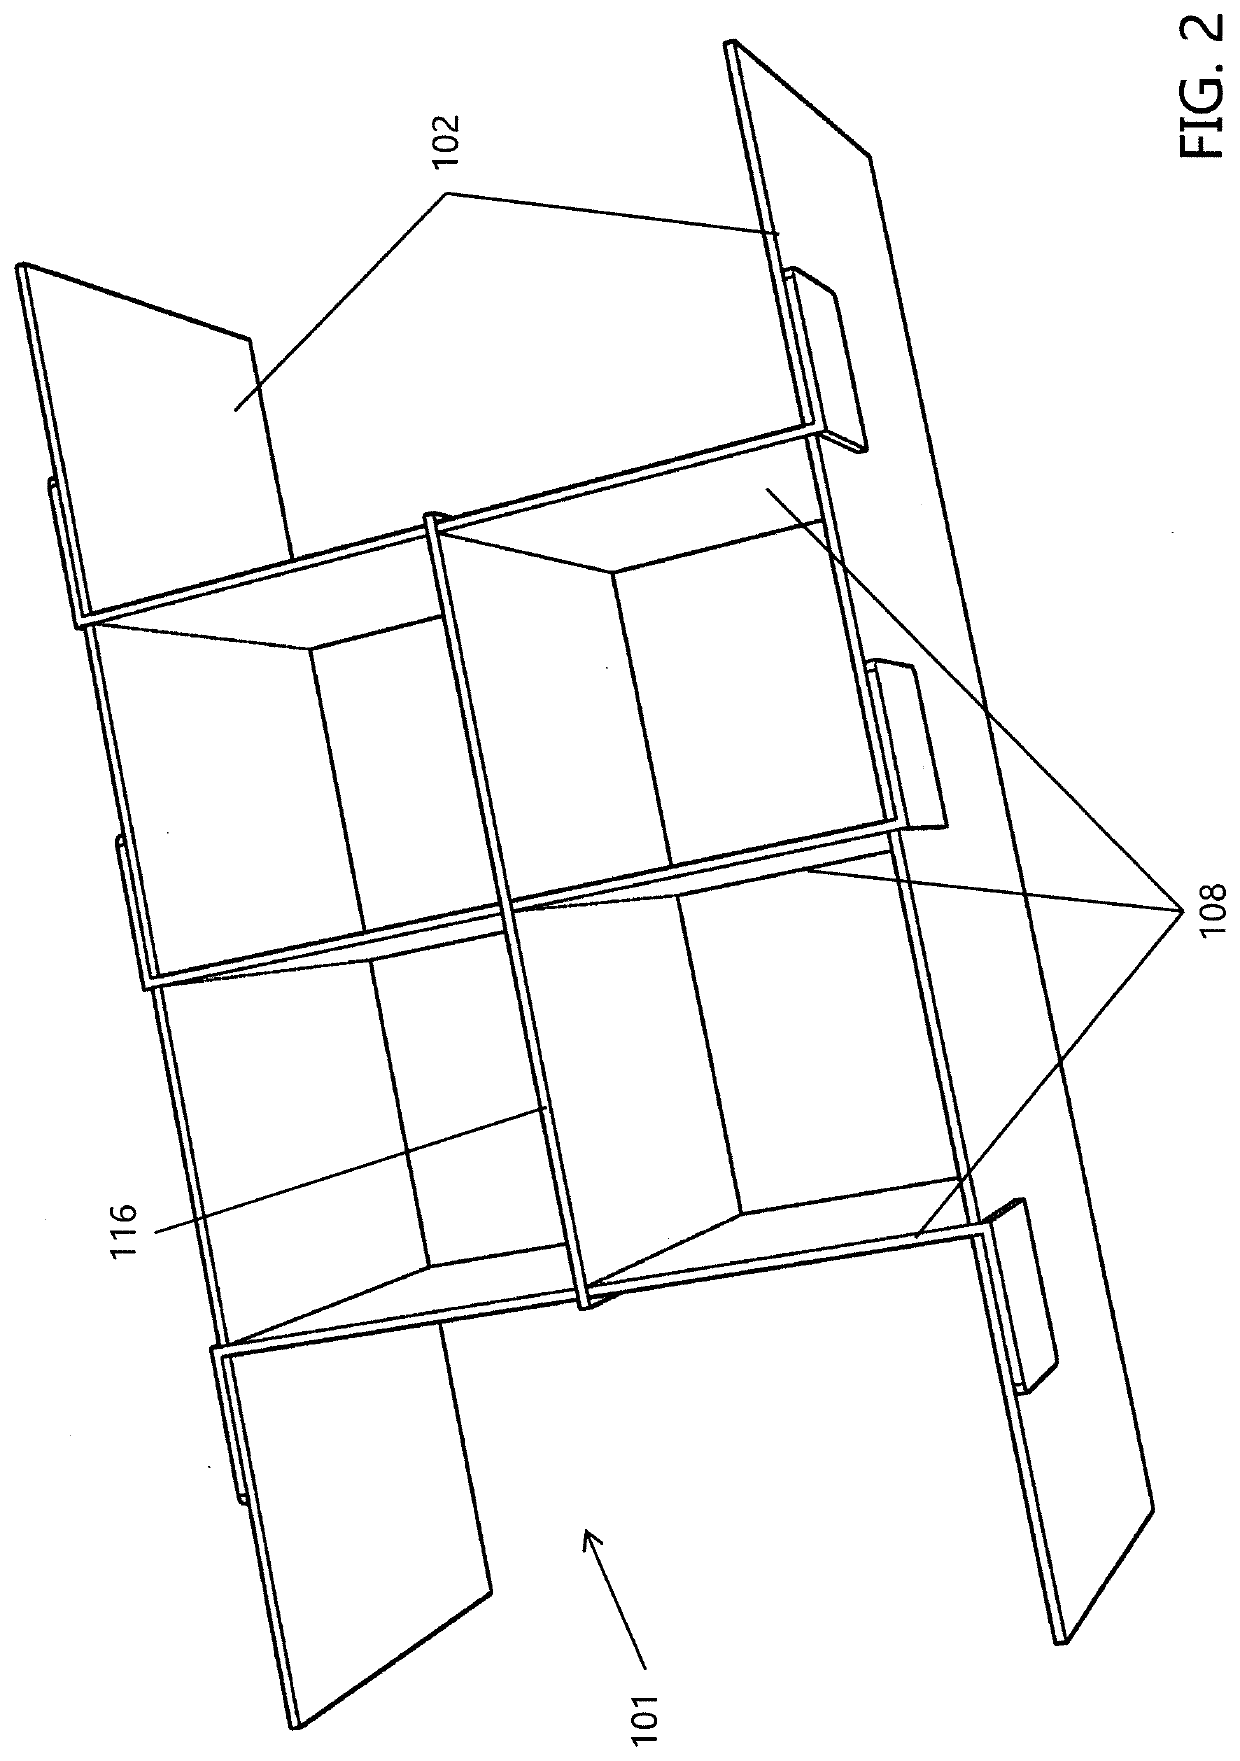 Box Divider System